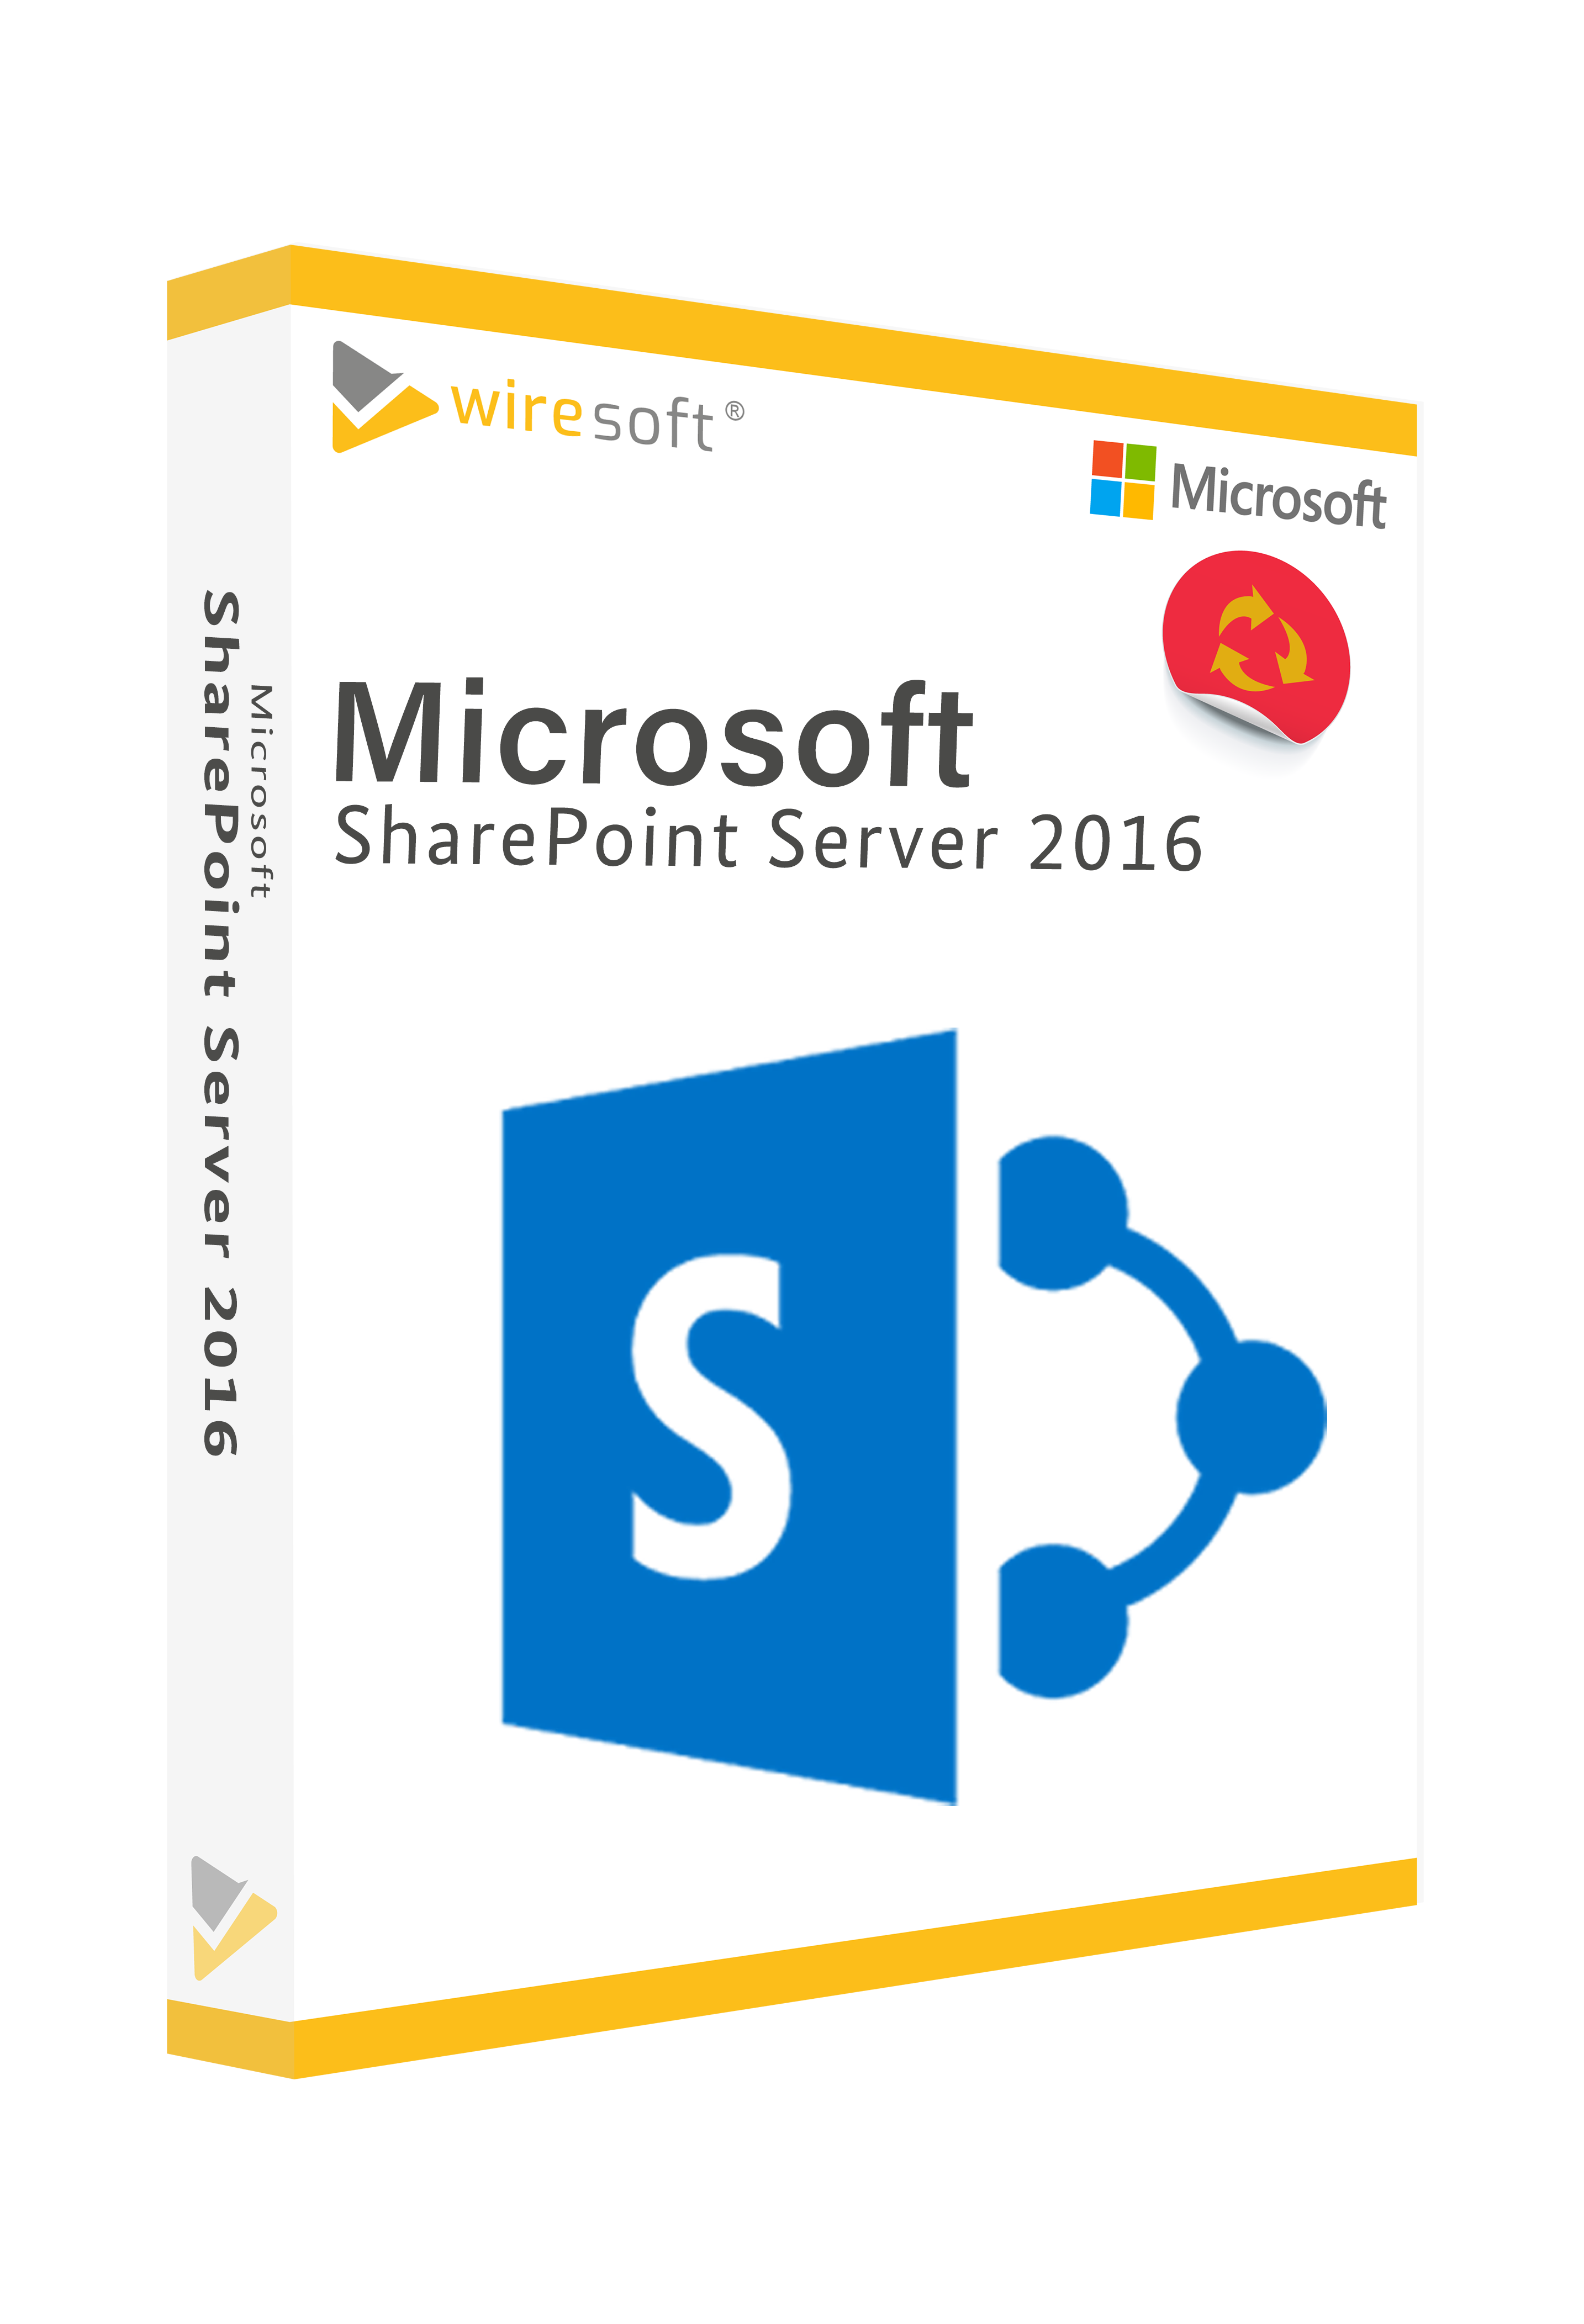 Sharepoint Server 2016 Microsoft Sharepoint Server Server Software Shop Wiresoft Compra De 6191